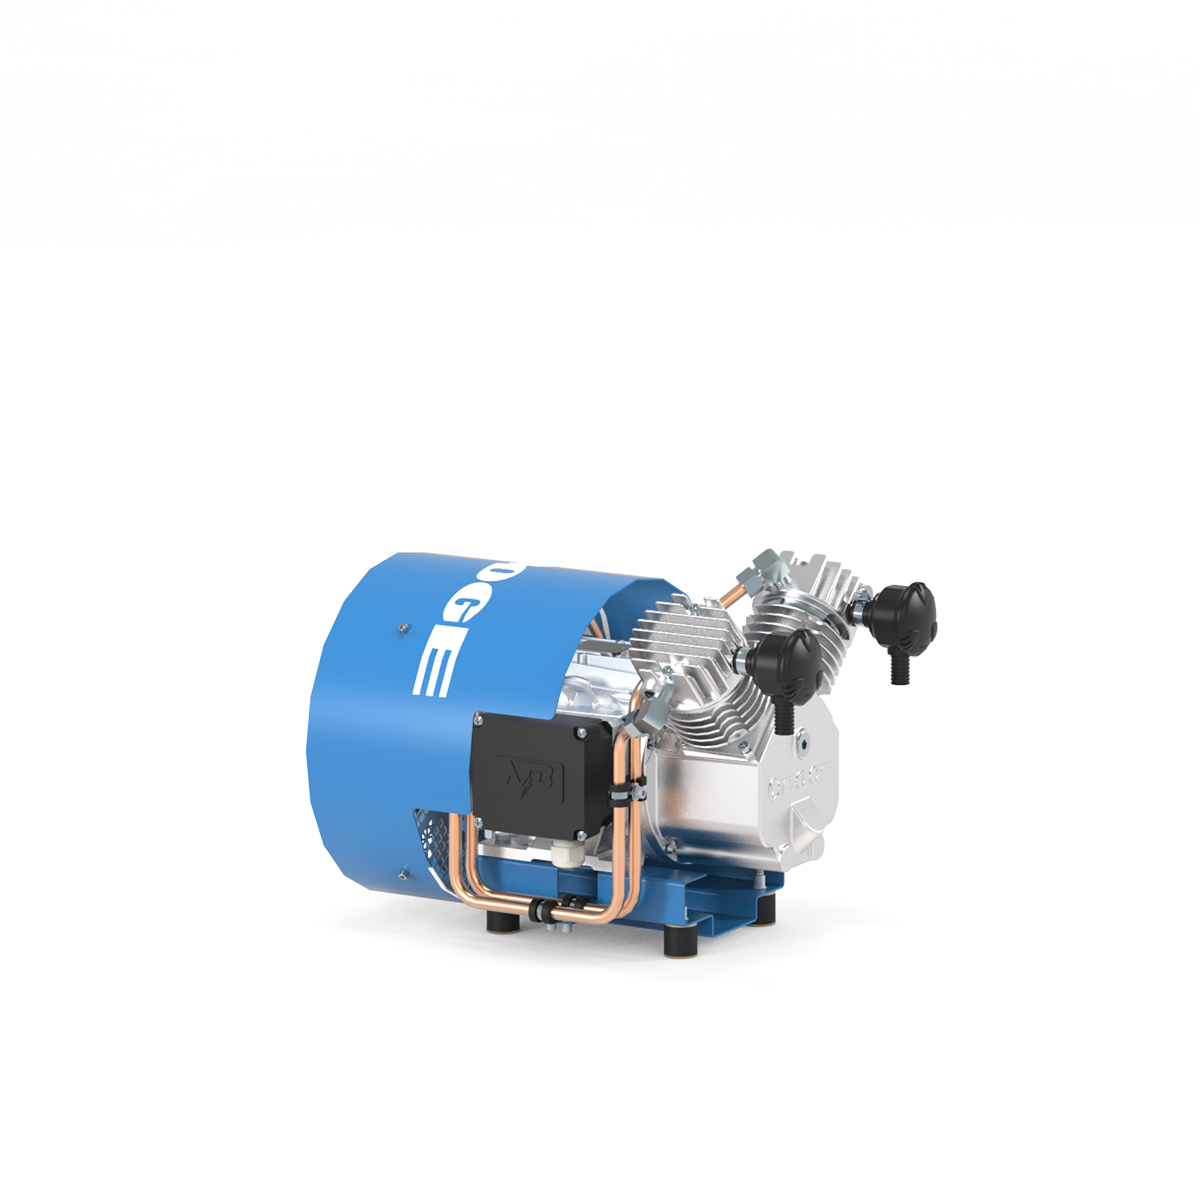 Compresor de pistón de la serie PO...L hasta 1,5 kW